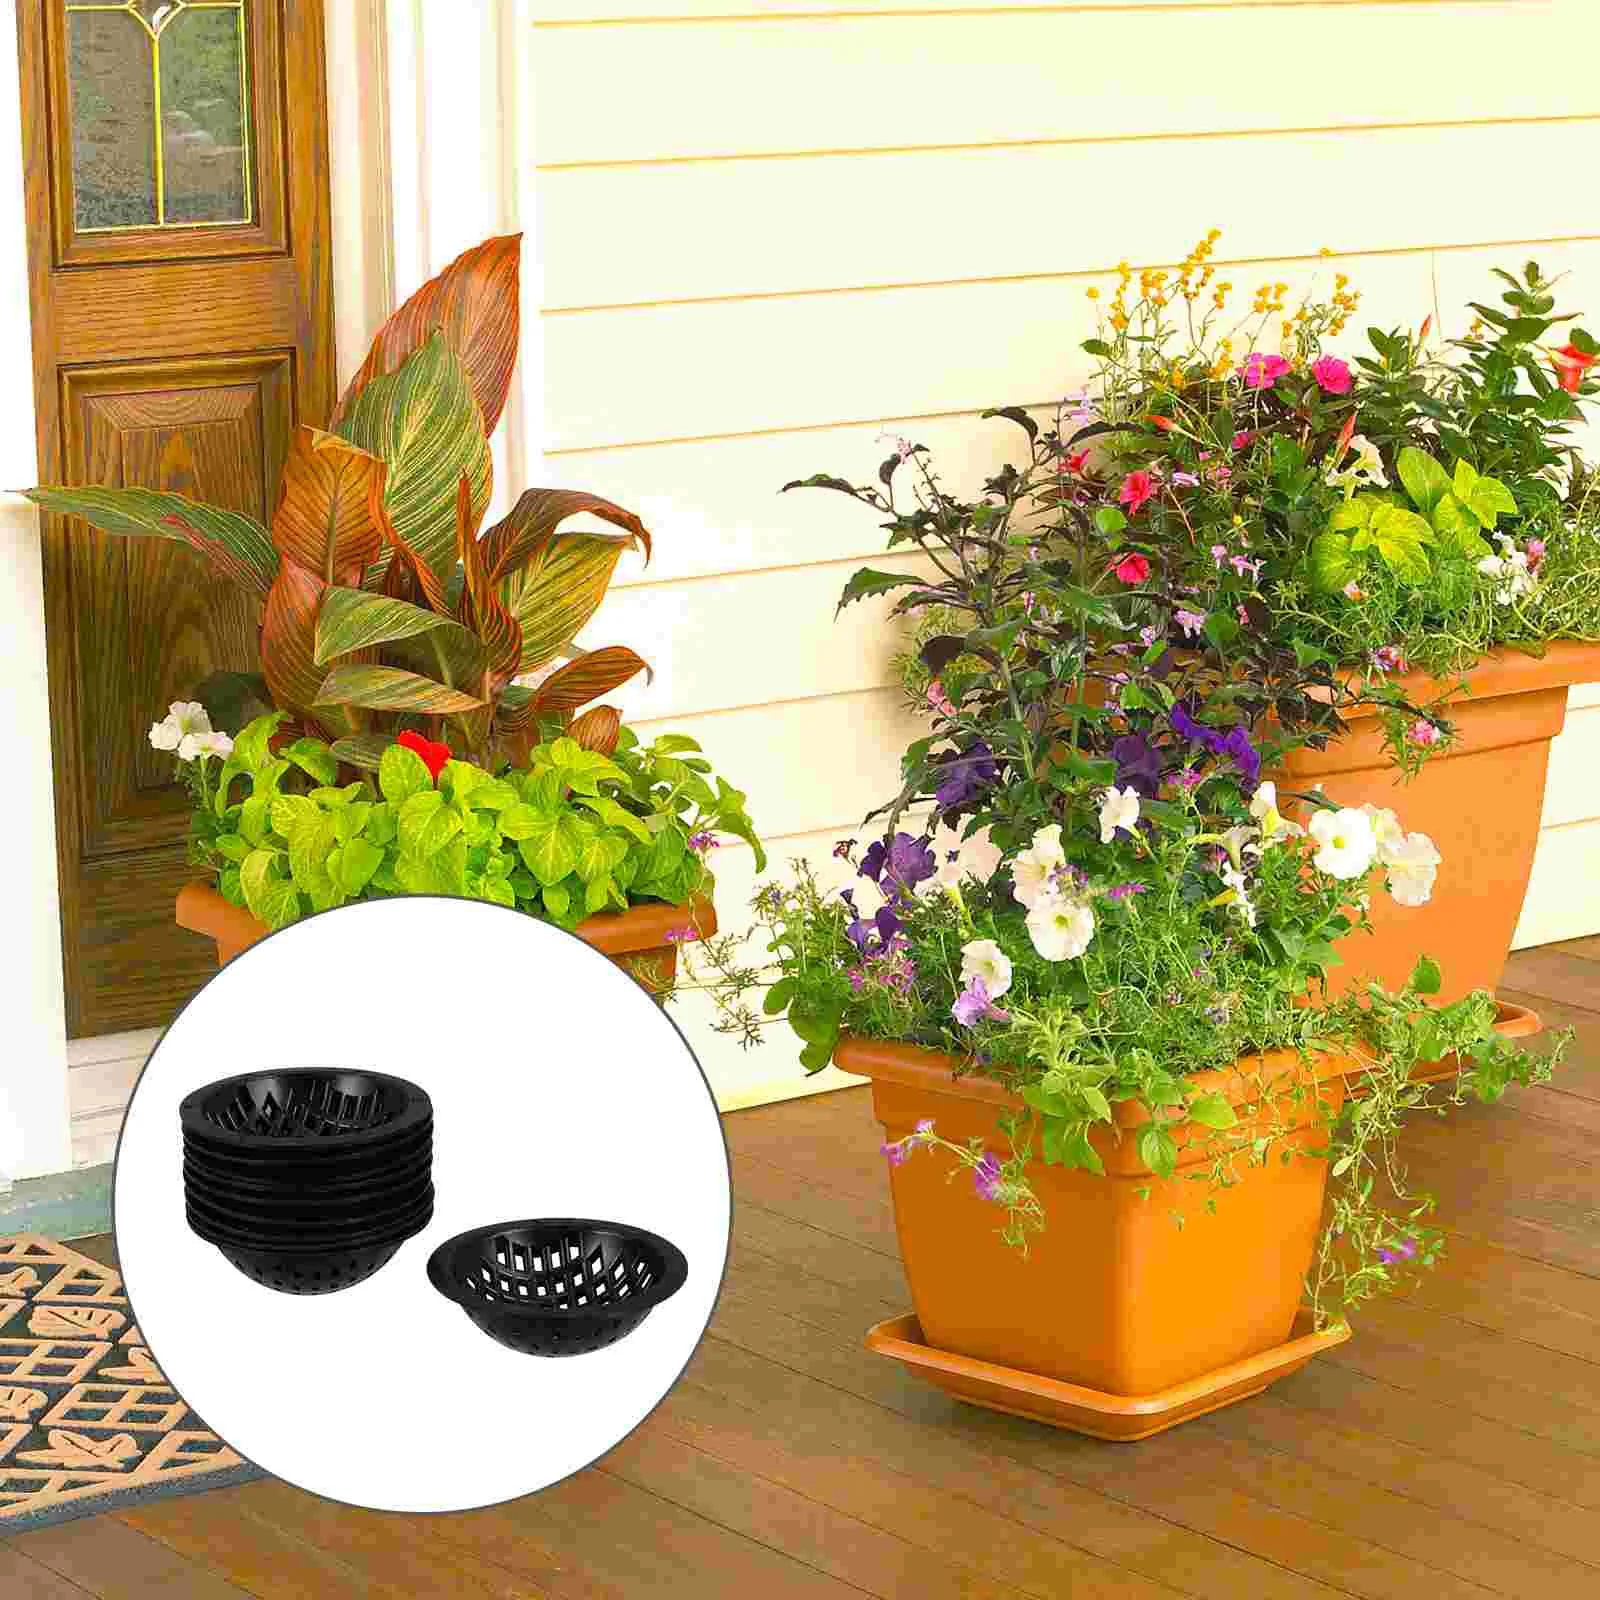 

20 Pcs Round Planter Flower Pot Mat Breathable Bottom Grid Pads Drainage Gasket Flowerpot Coaster Bowl Shape Bonsai